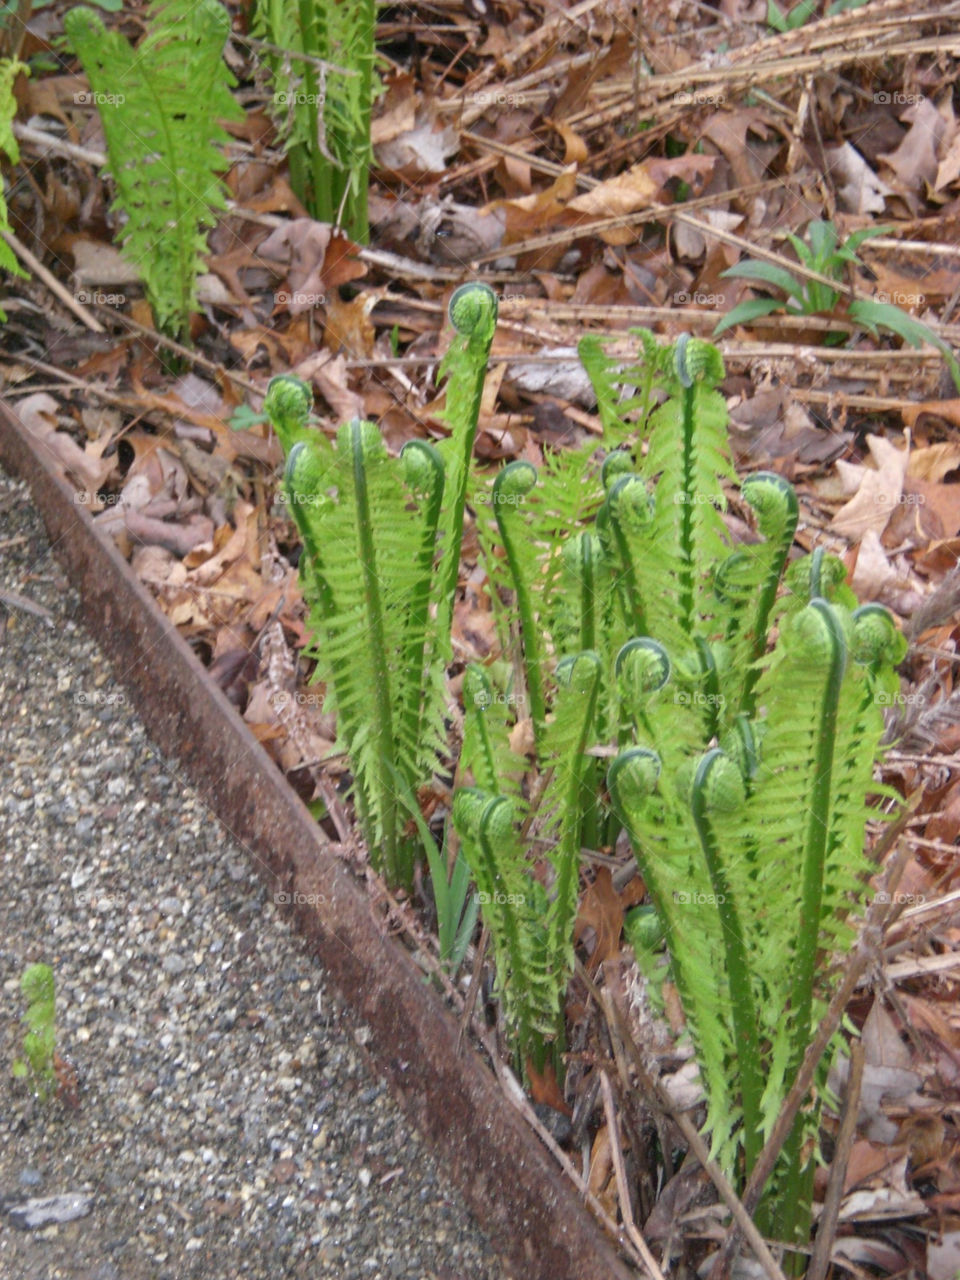 plant fern fiddlehead by trvldeb07